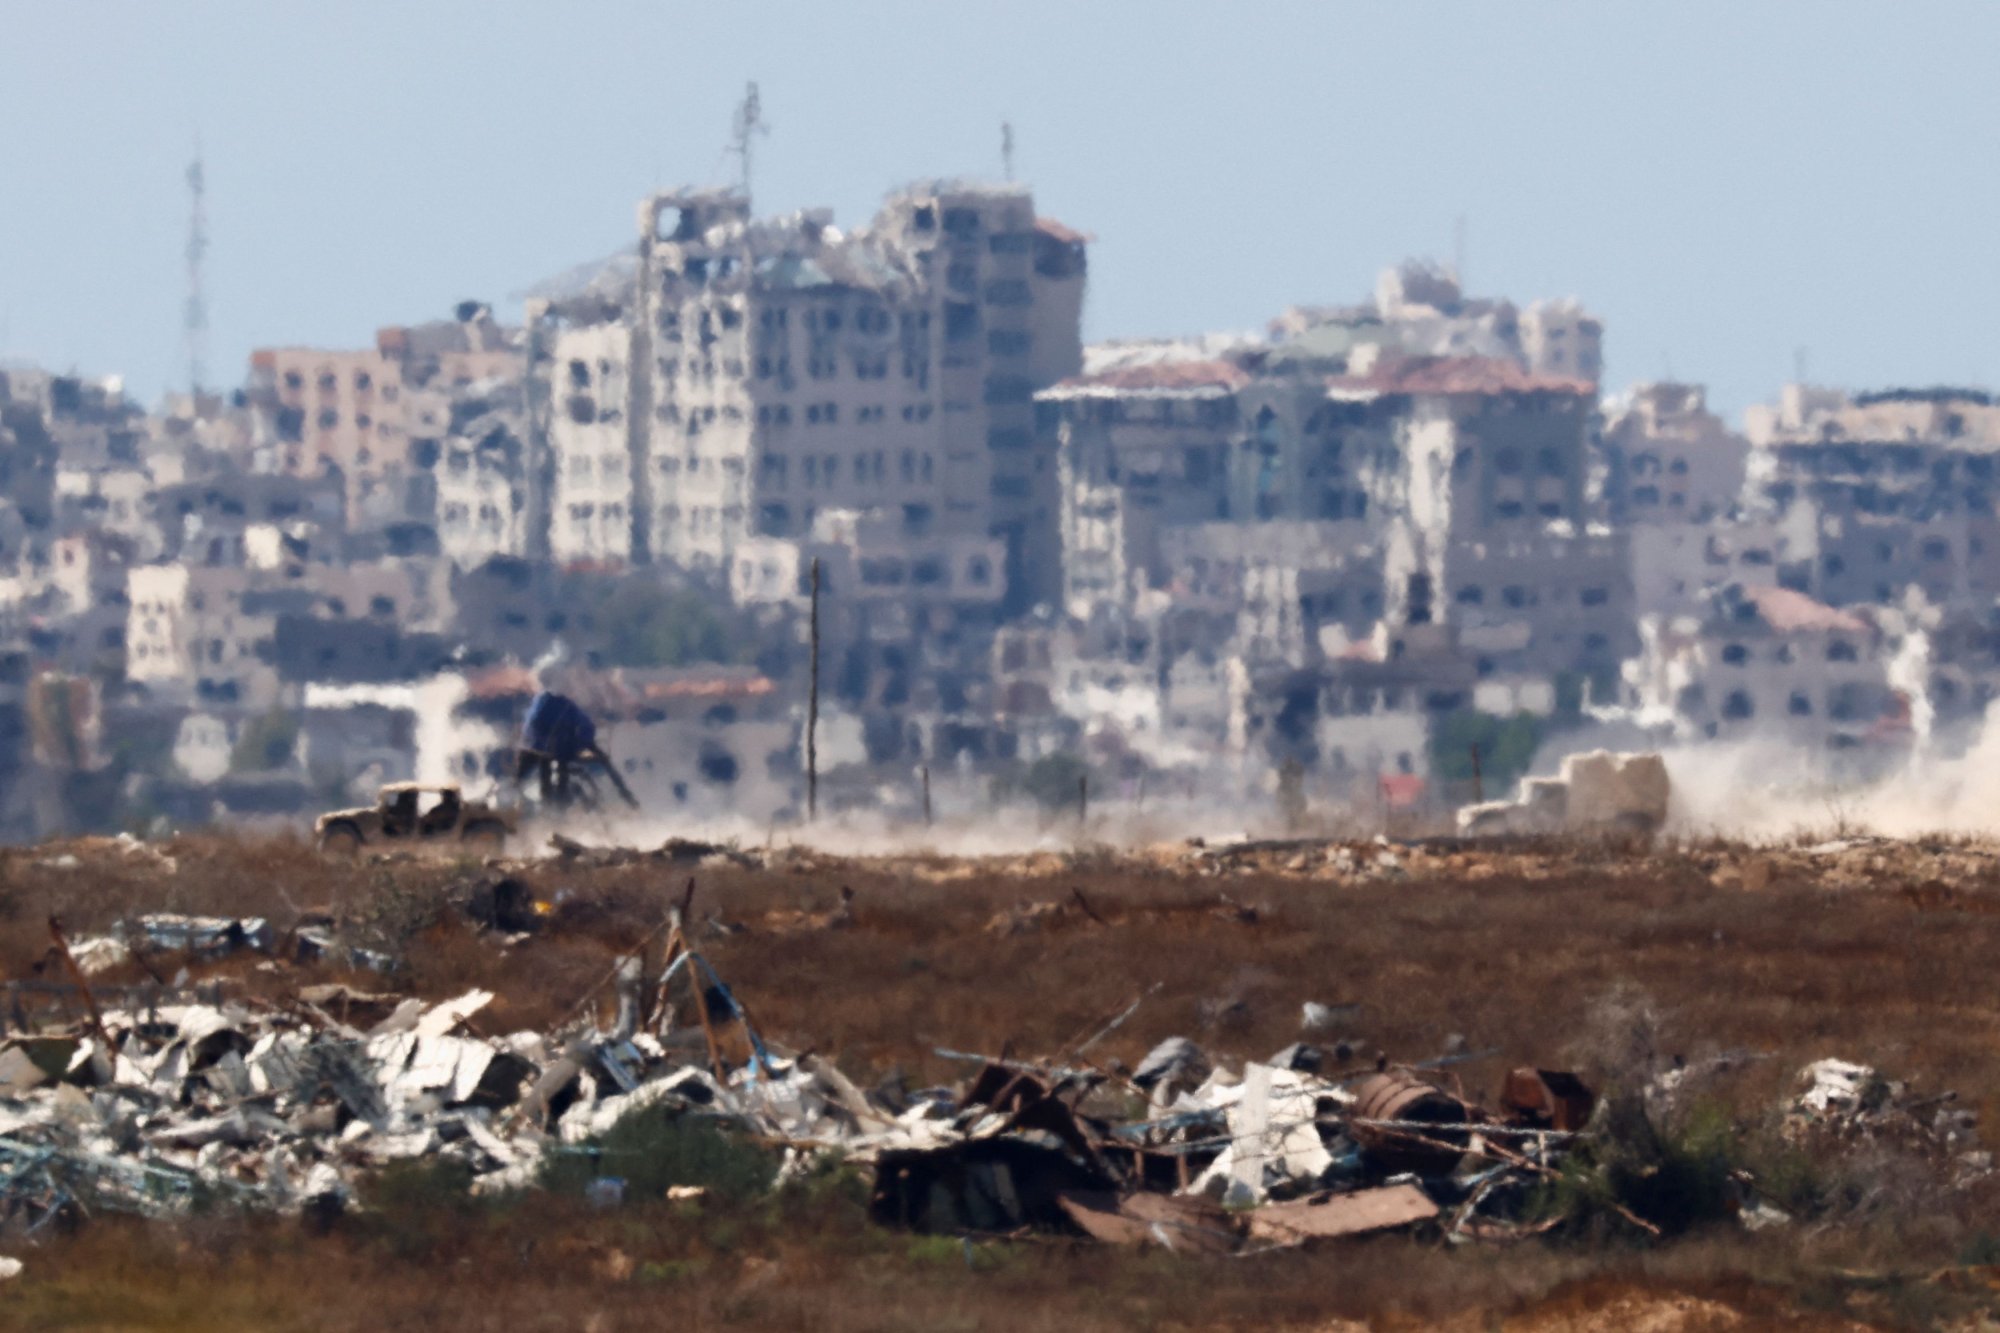 Λωρίδα της Γάζας: O OHE προειδοποιεί για περιβαλλοντική καταστροφή από τον πόλεμο